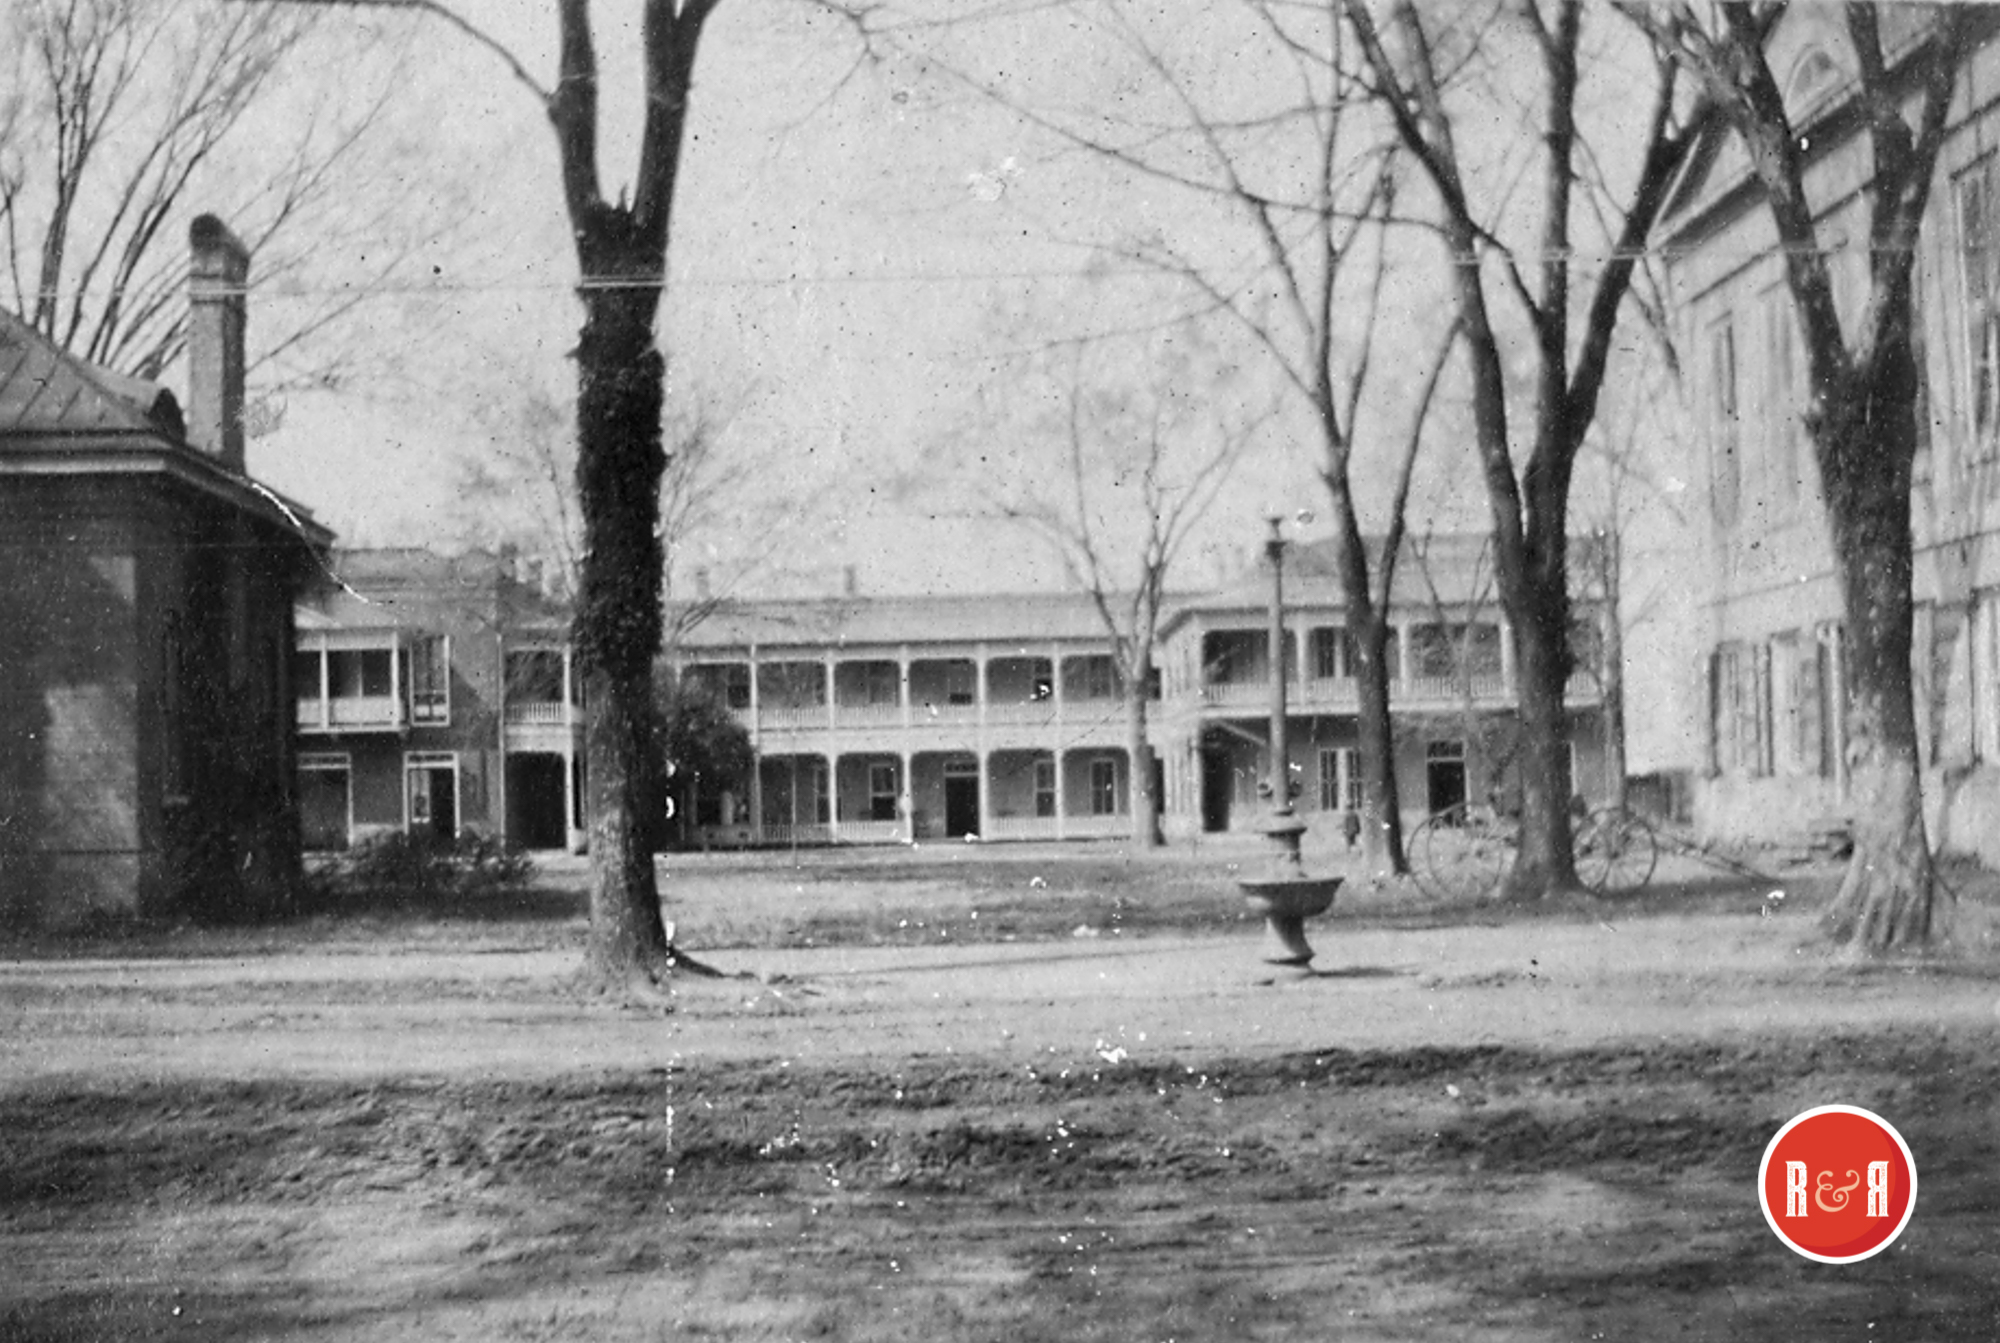 CARMICHAEL HOTEL MARION, S.C. ca. 1910